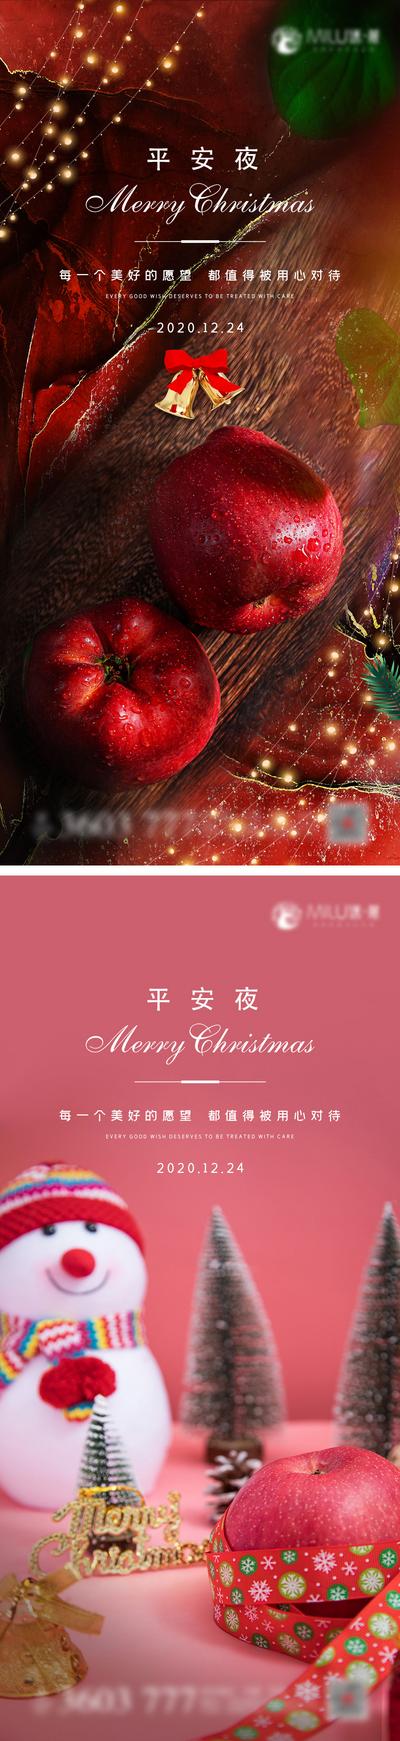 南门网 海报 公历节日 西方节日 圣诞节 平安夜 苹果 雪人